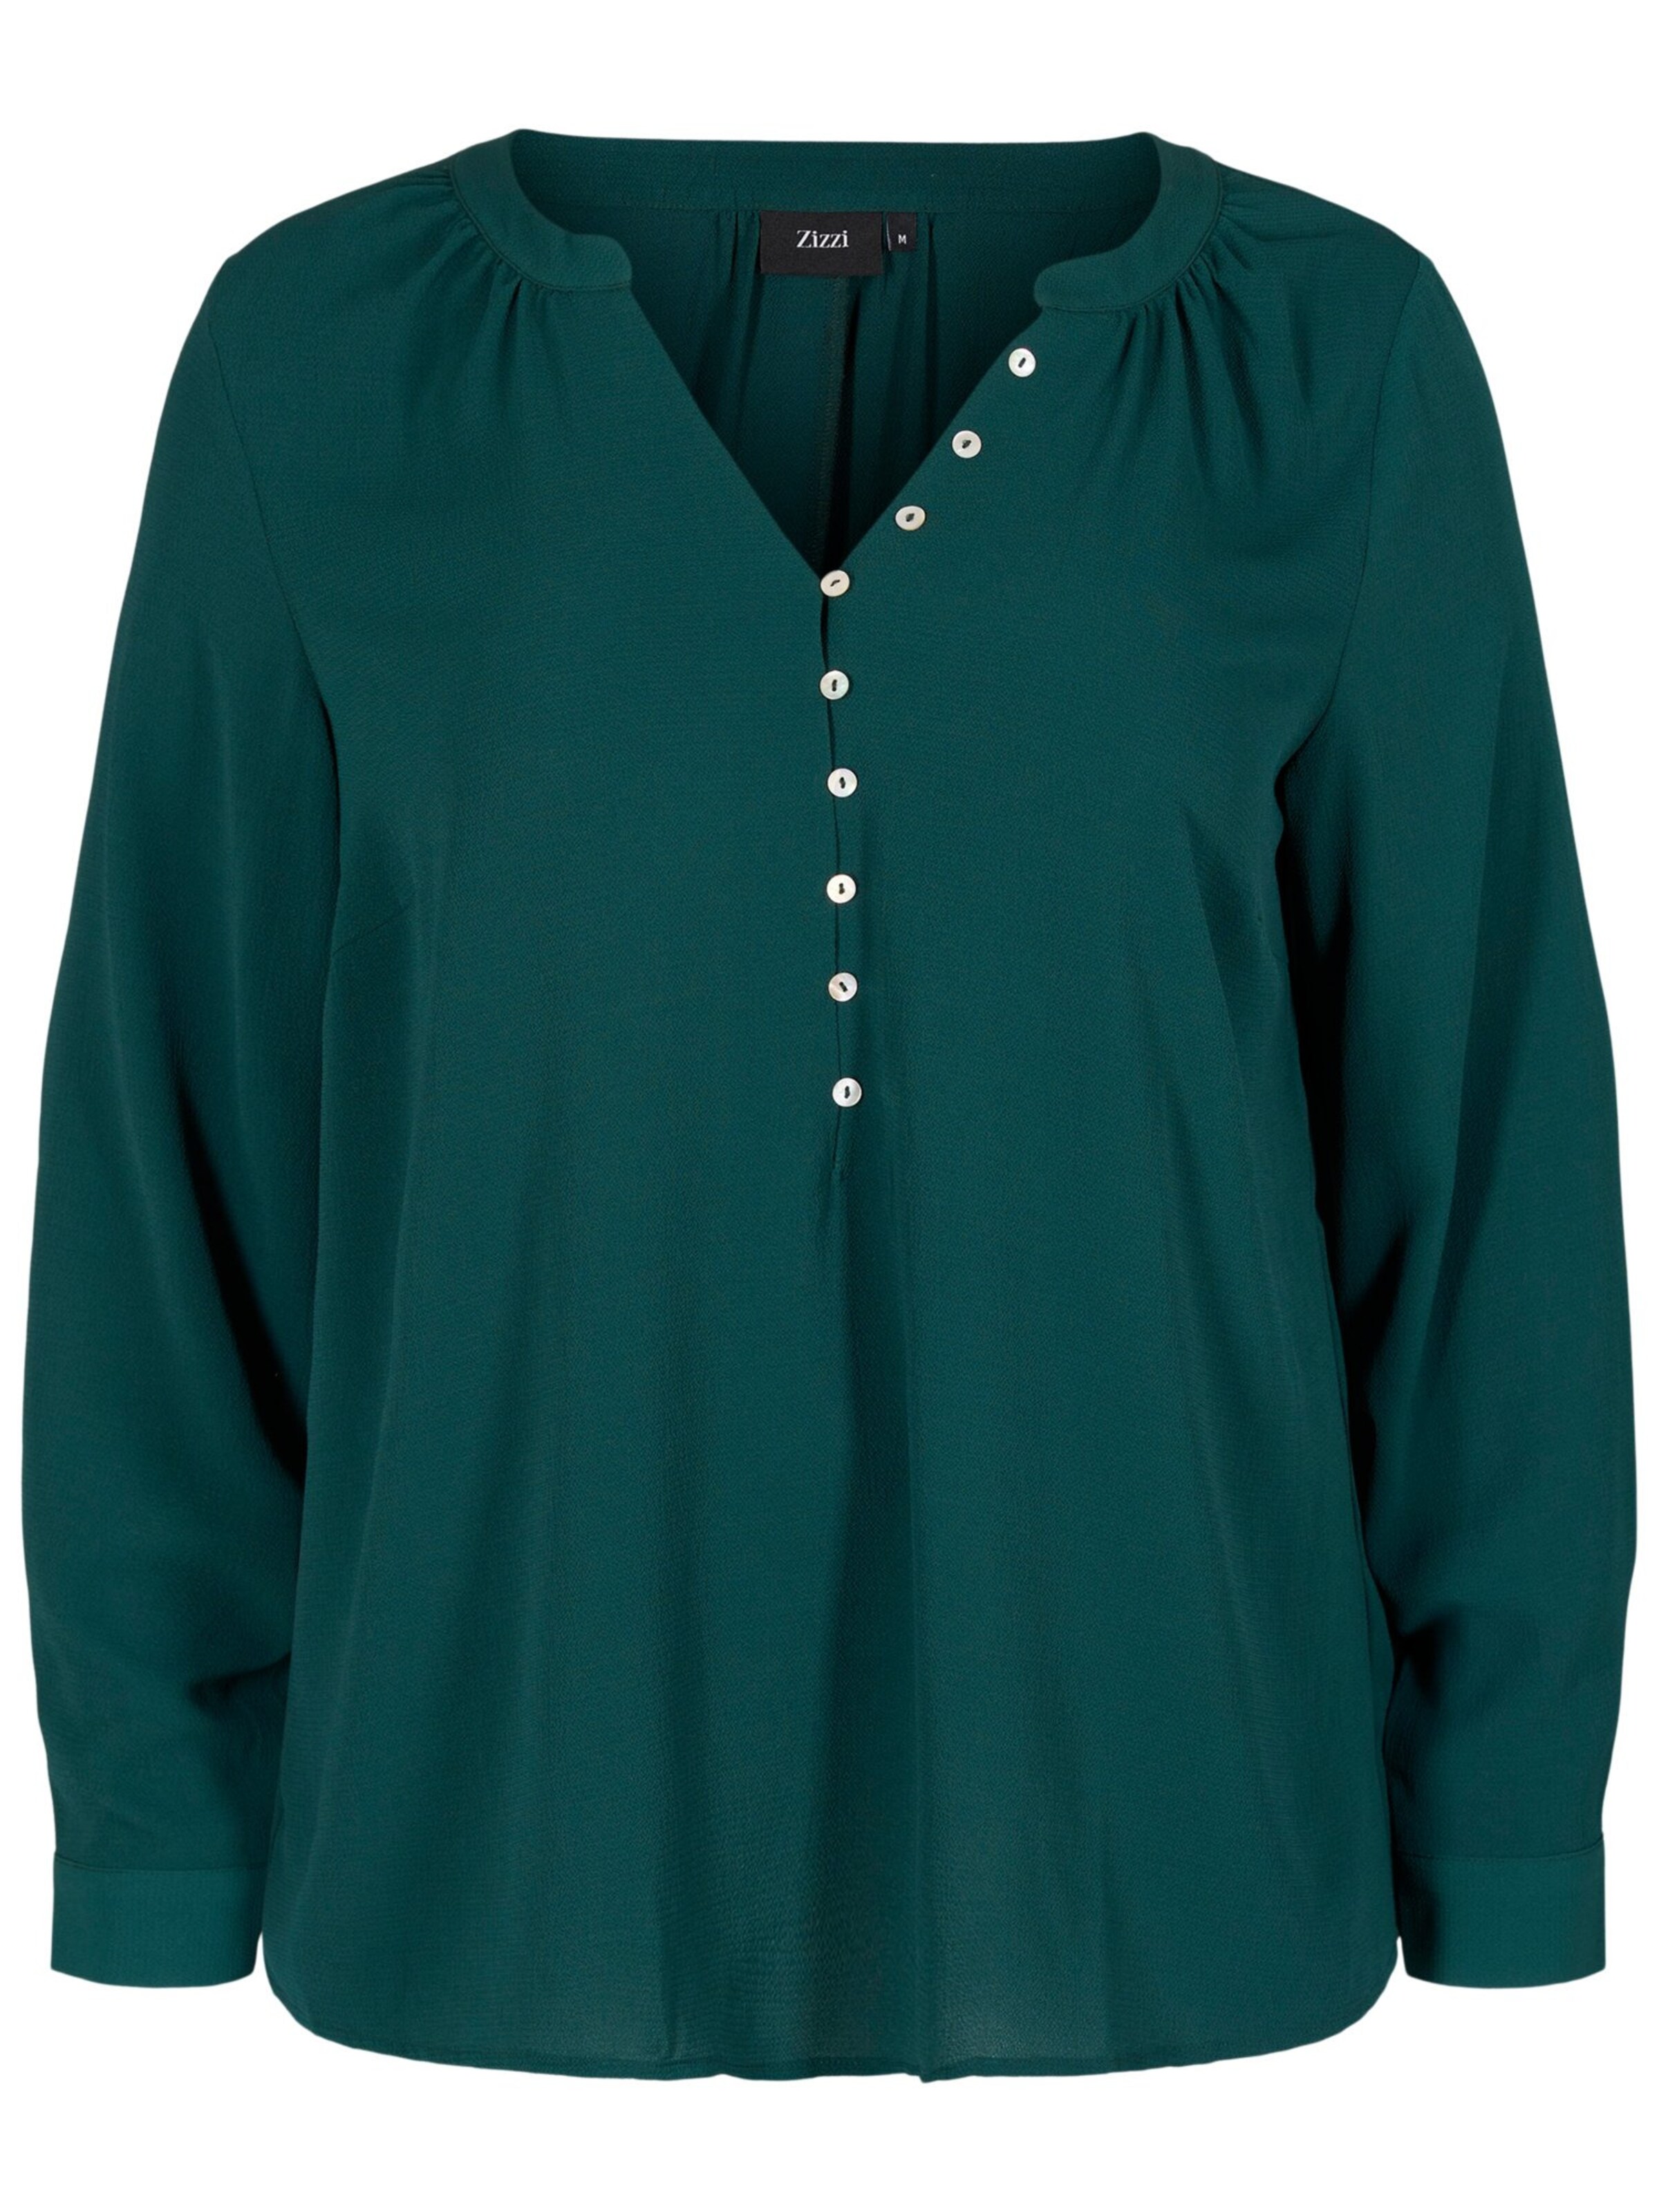 Abbigliamento VanXb Zizzi Camicia da donna Eanni in Smeraldo 